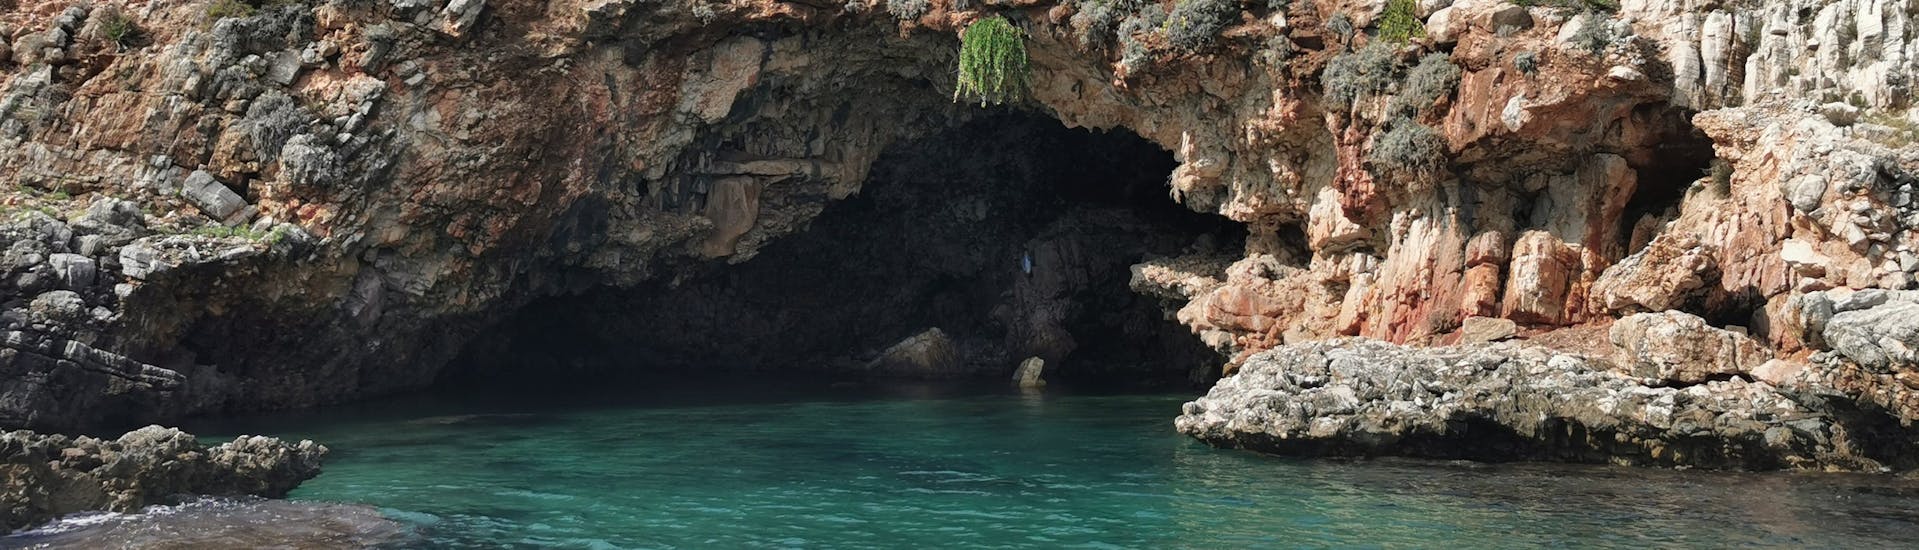 La costa della Riserva dello Zingaro è ricca di bellissime grotte che possono essere ammirate durante la gita in barca da Castellamare alla Riserva dello Zingaro.